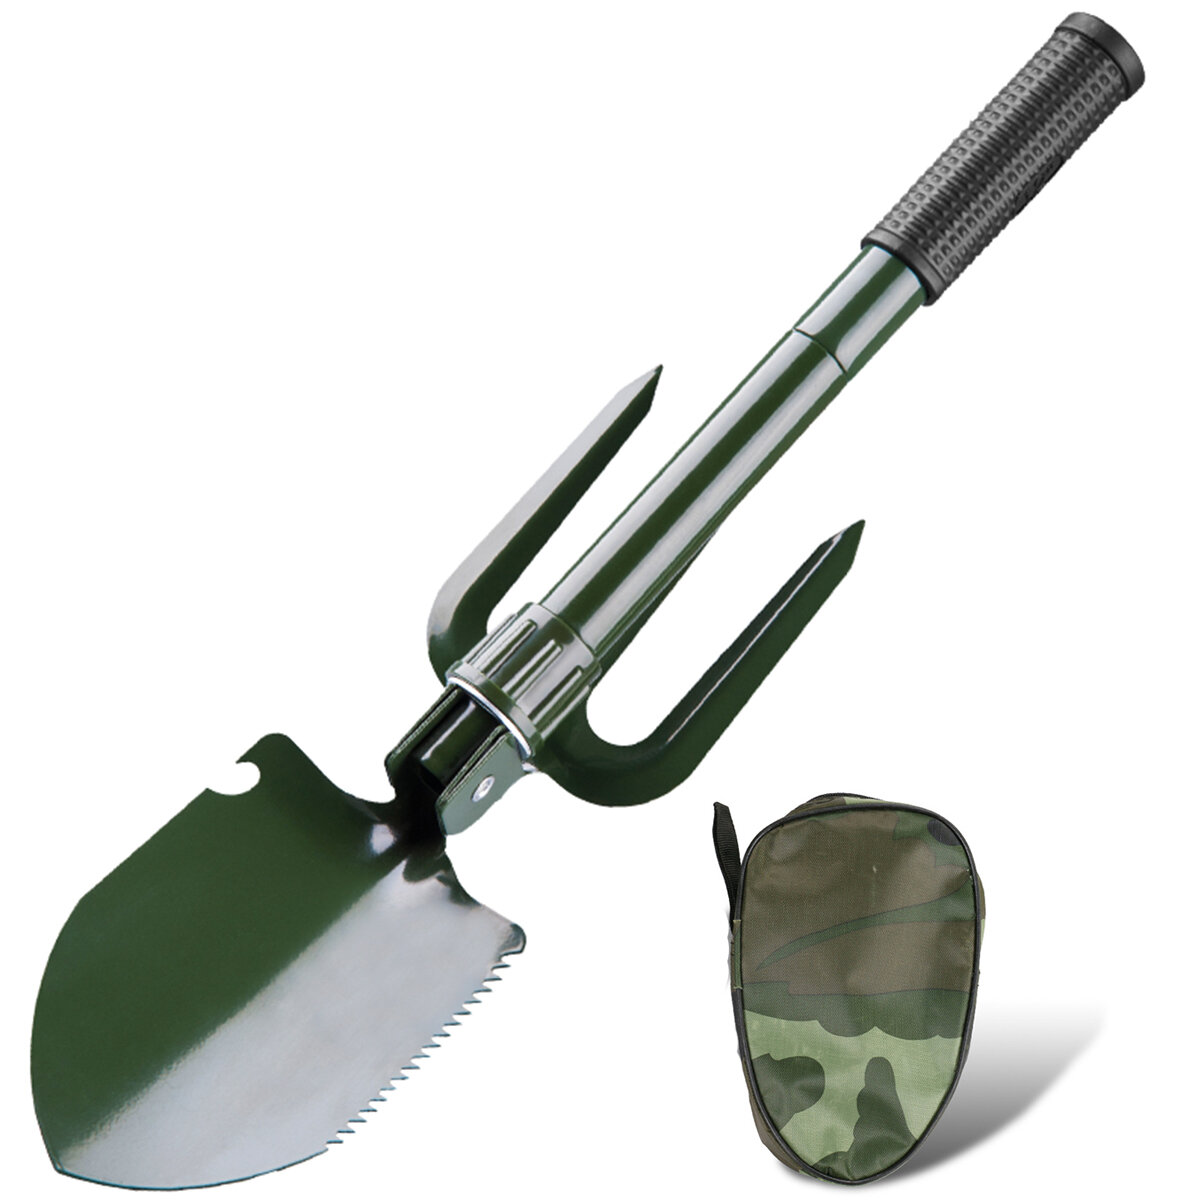 Раскладная тактическая лопата 5 в 1 из нержавеющей стали для военных, компактный тактический инструмент для выживания в экстренных ситуациях на открытом воздухе.